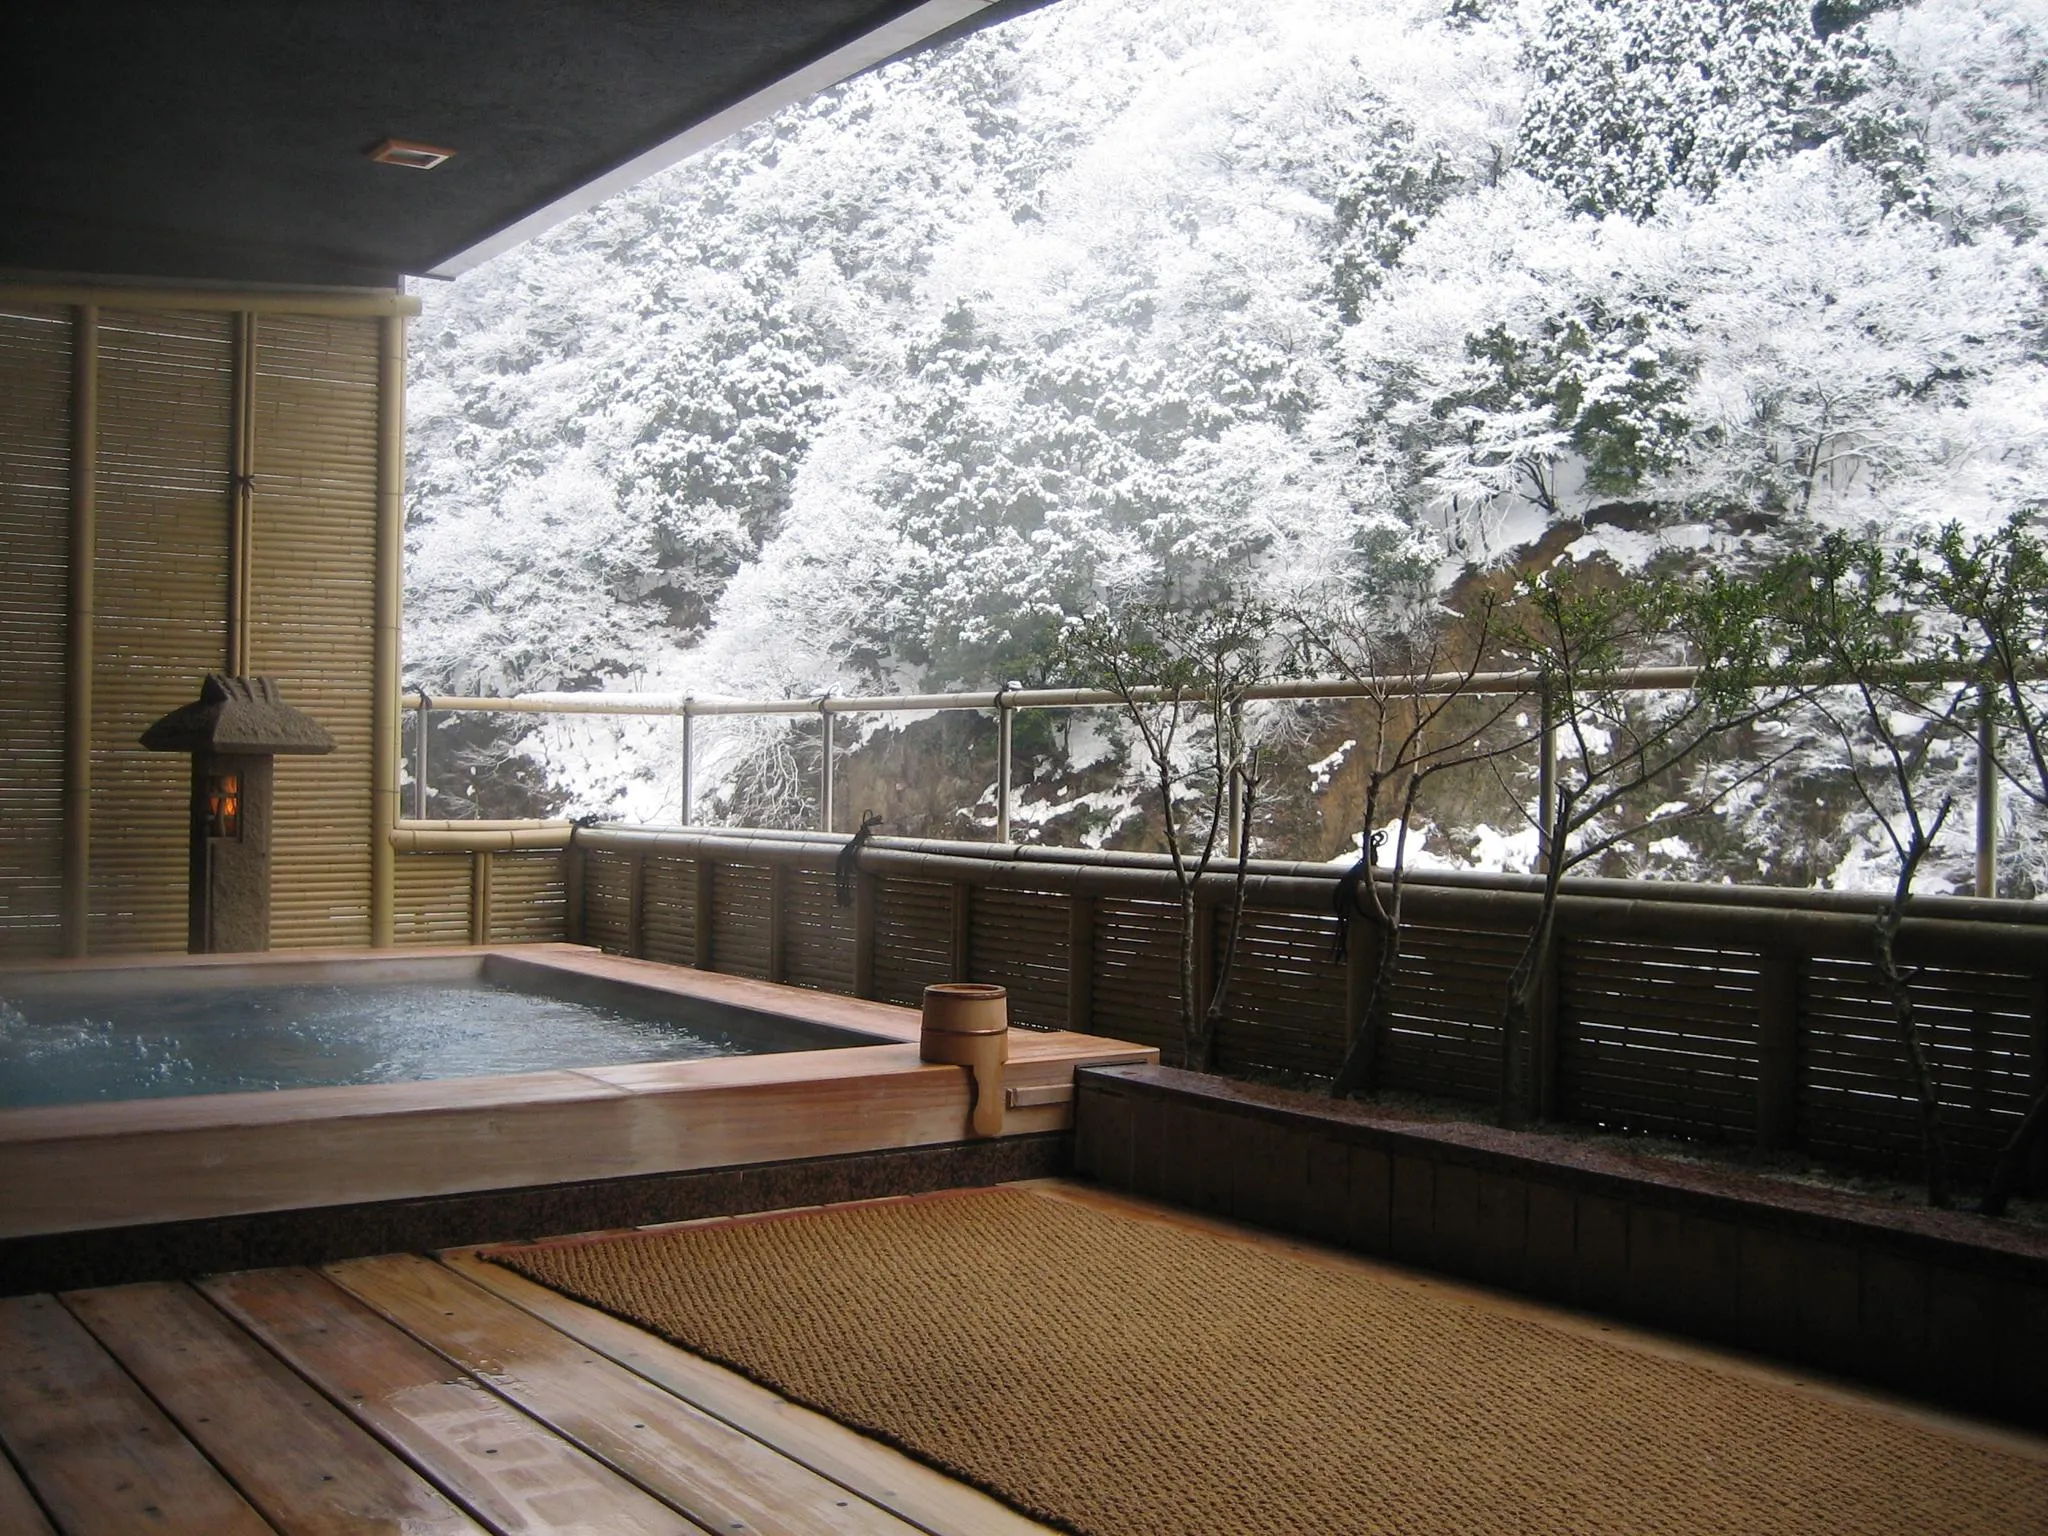 富山県で泊まりたい、のんびりと自然を楽しめるホテル・旅館7選。